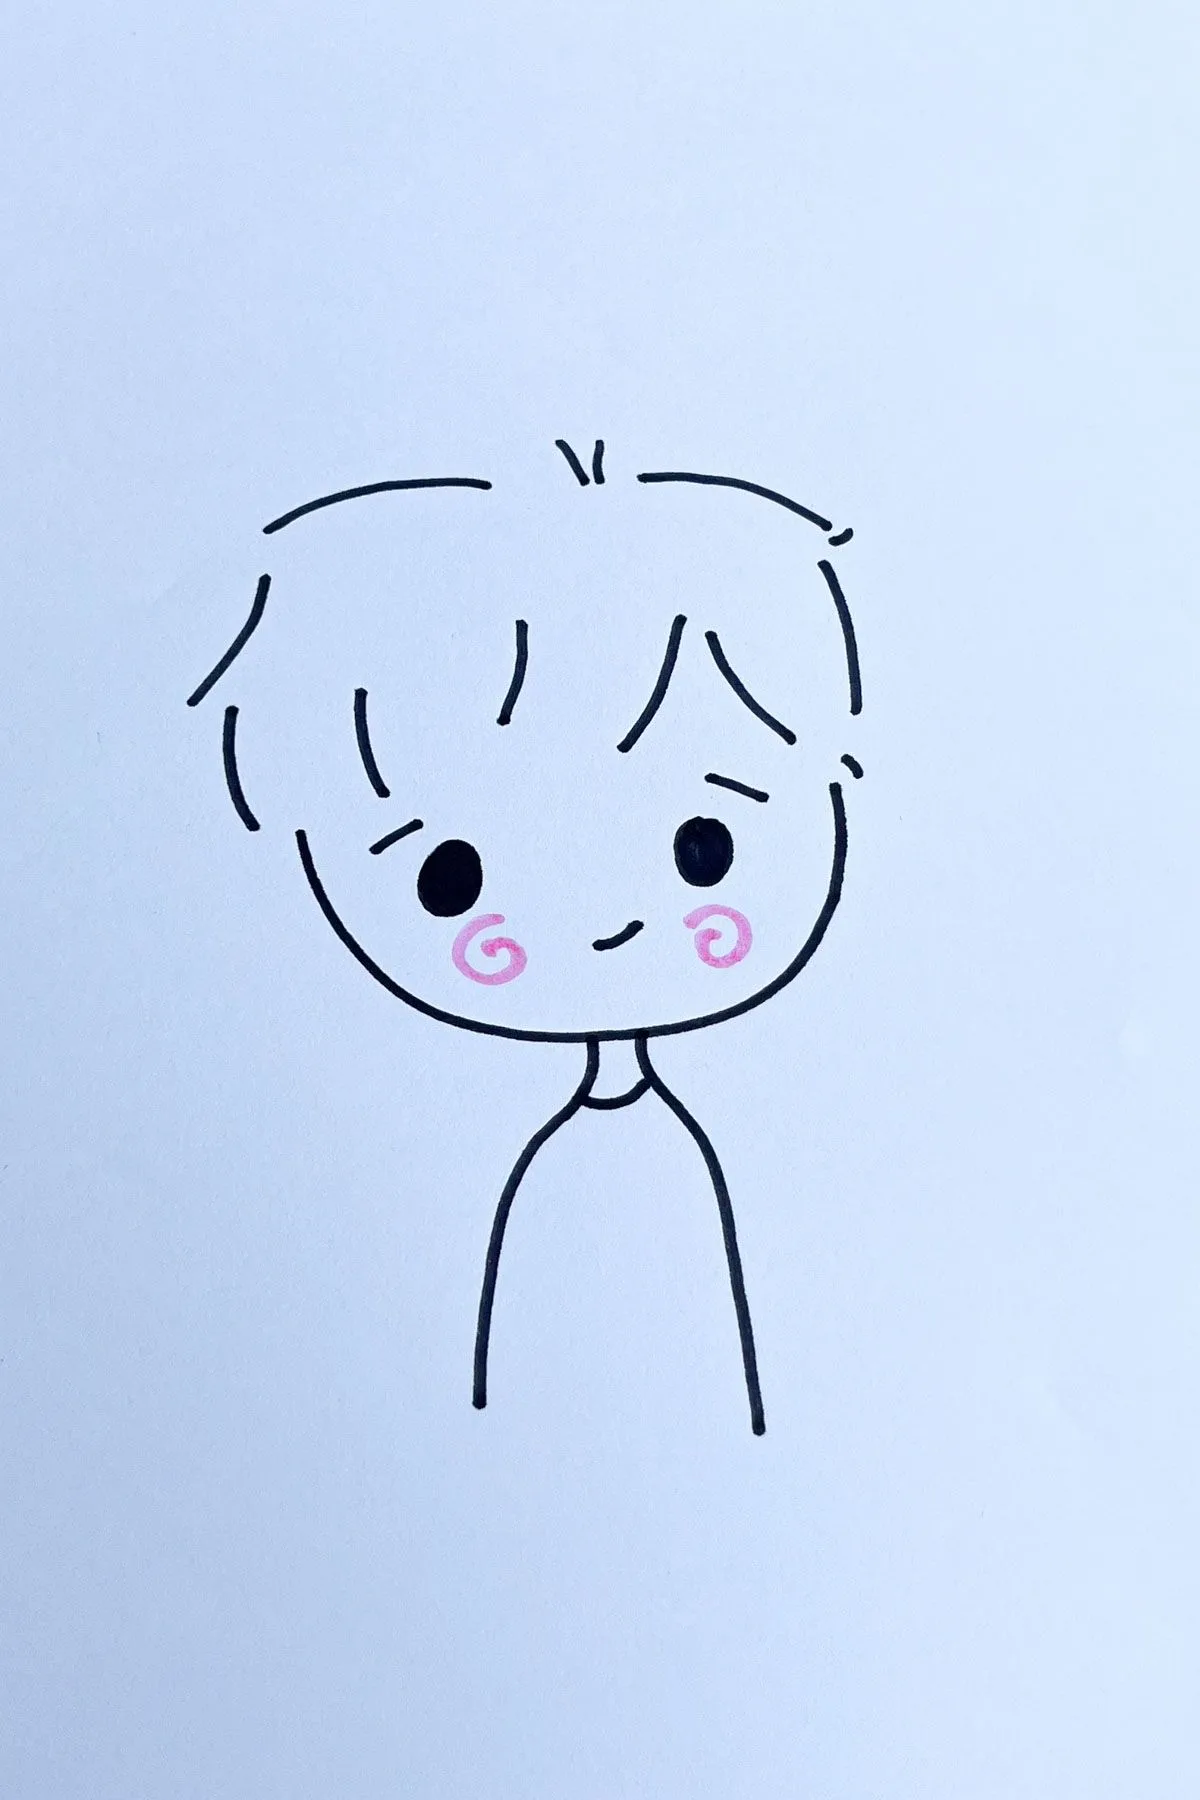 blushing boy anime drawing